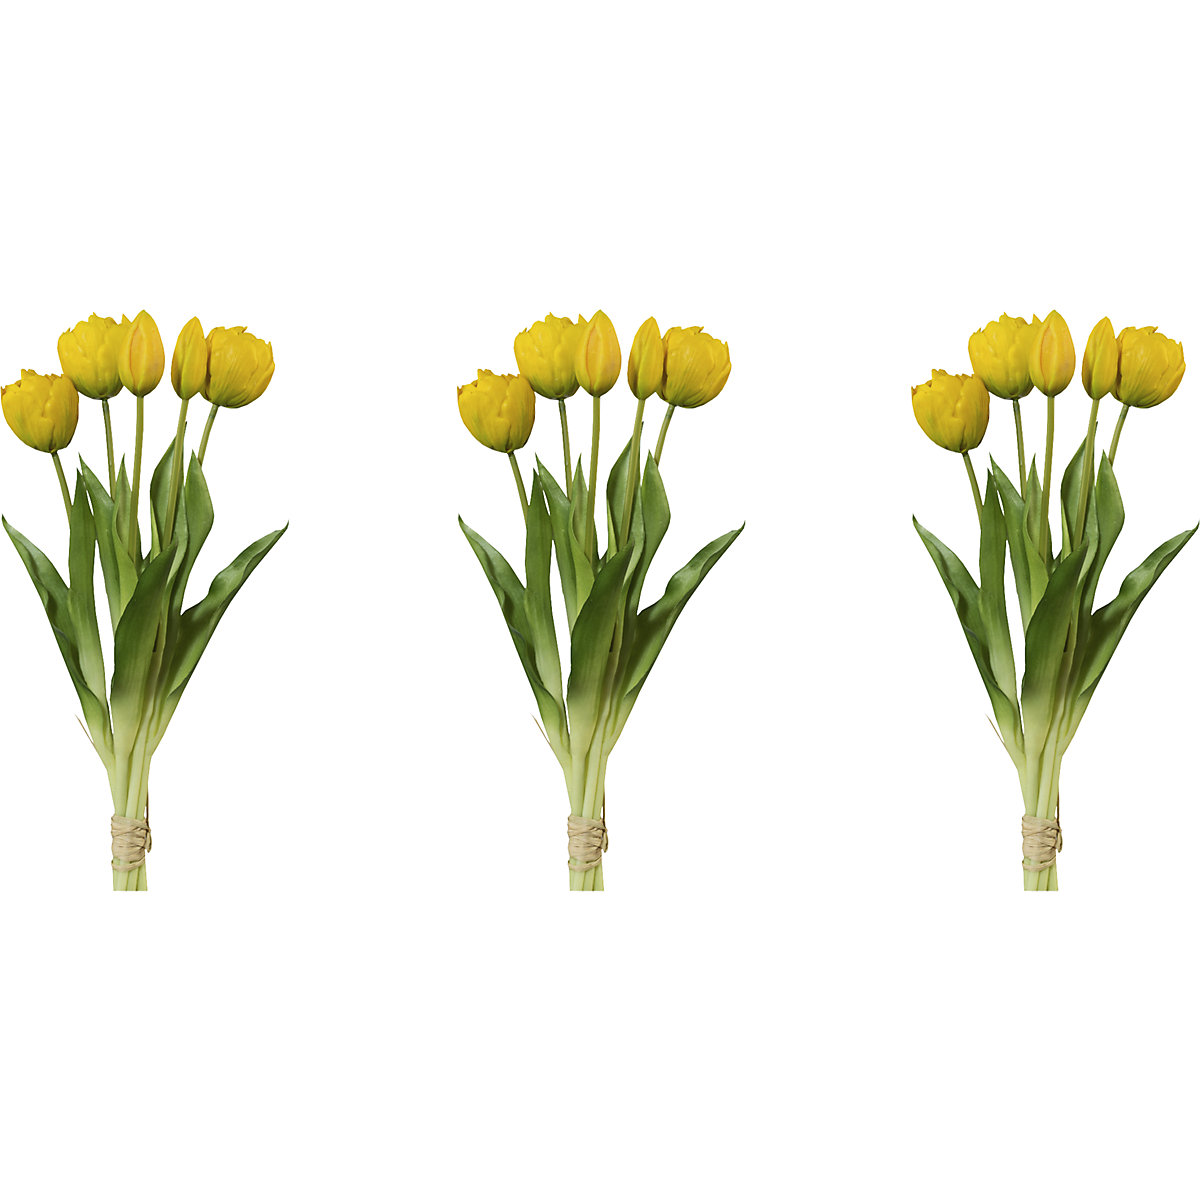 Plné tulipány, real touch, zväzok 5 kvetov